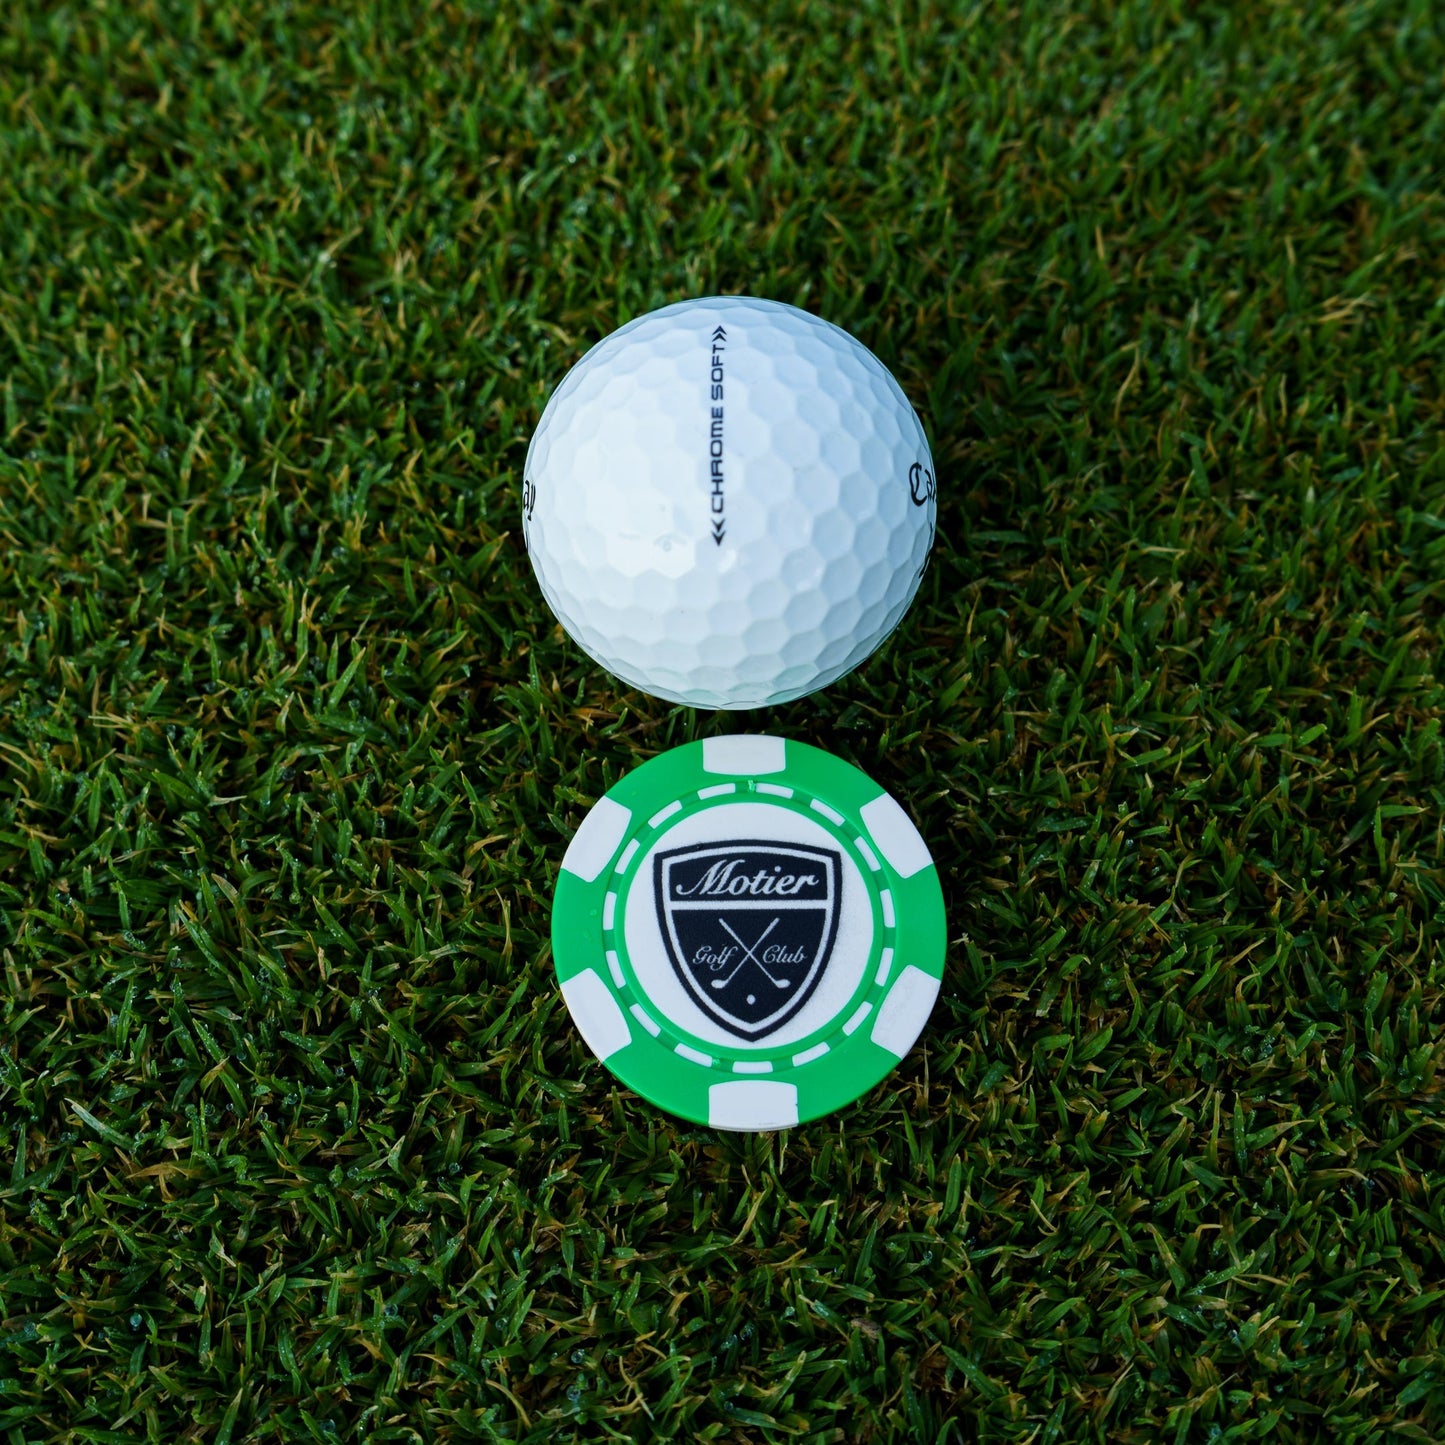 Motier Golf Club Ball Marker (Green)